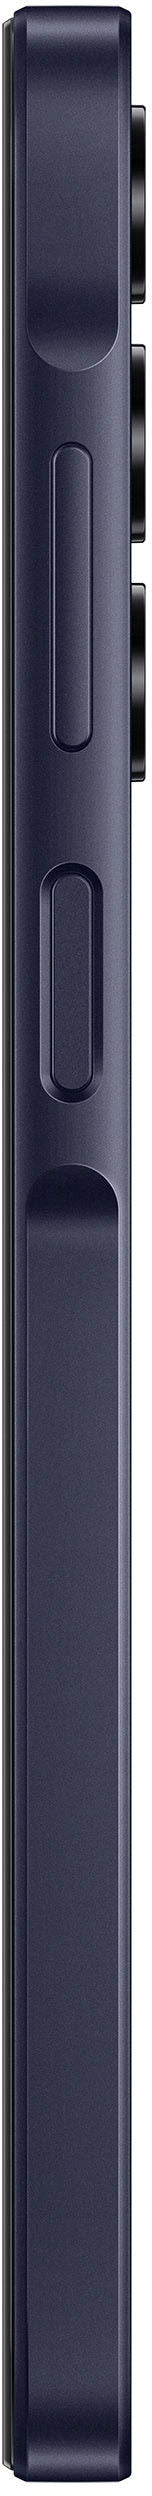 Samsung - Galaxy A25 5G 128GB (Unlocked) - Blue Black_1